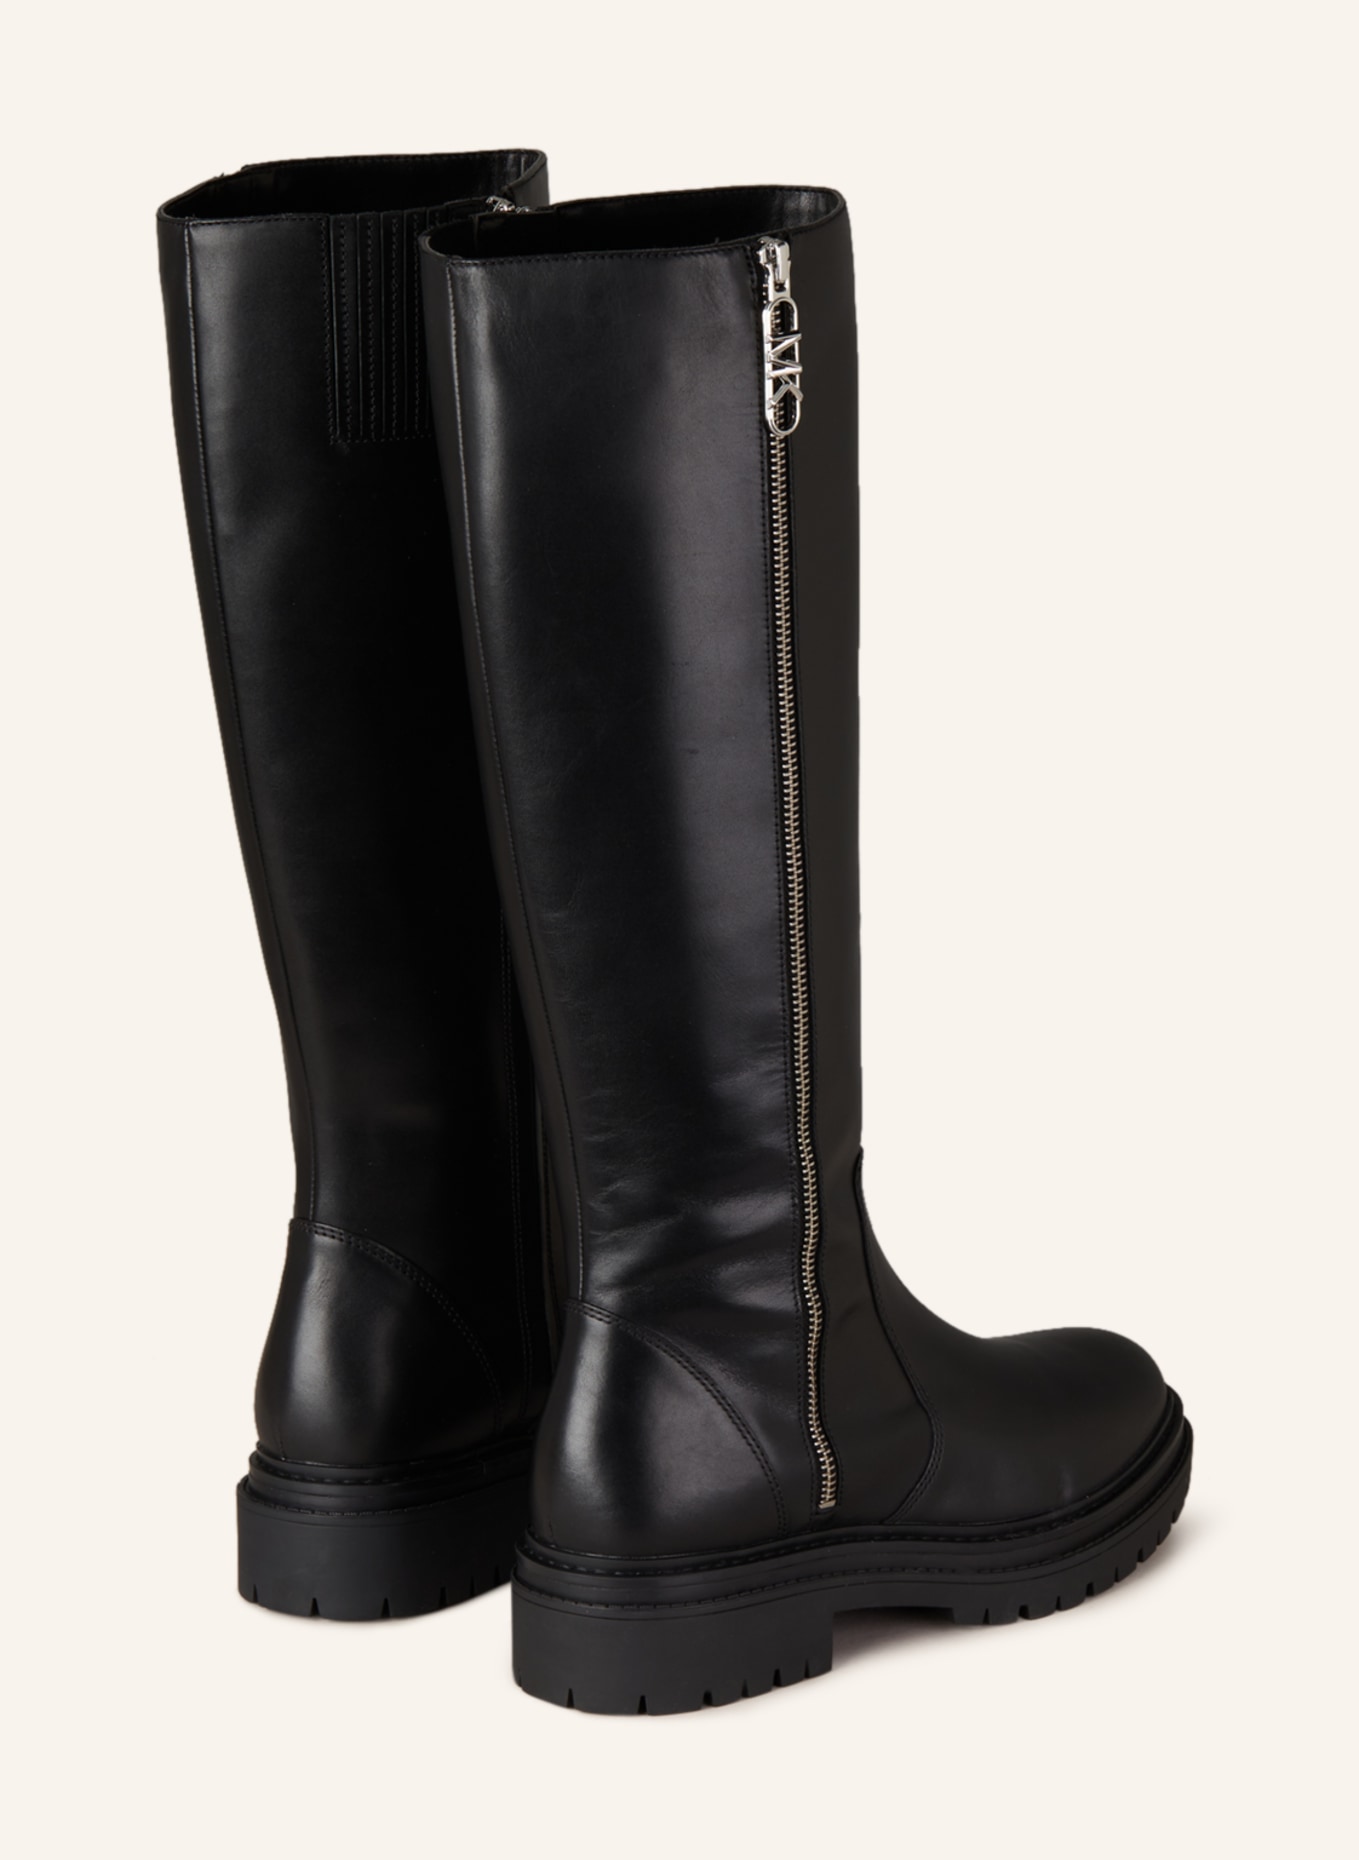 MICHAEL KORS Boots REGAN, Color: 001 BLACK (Image 2)